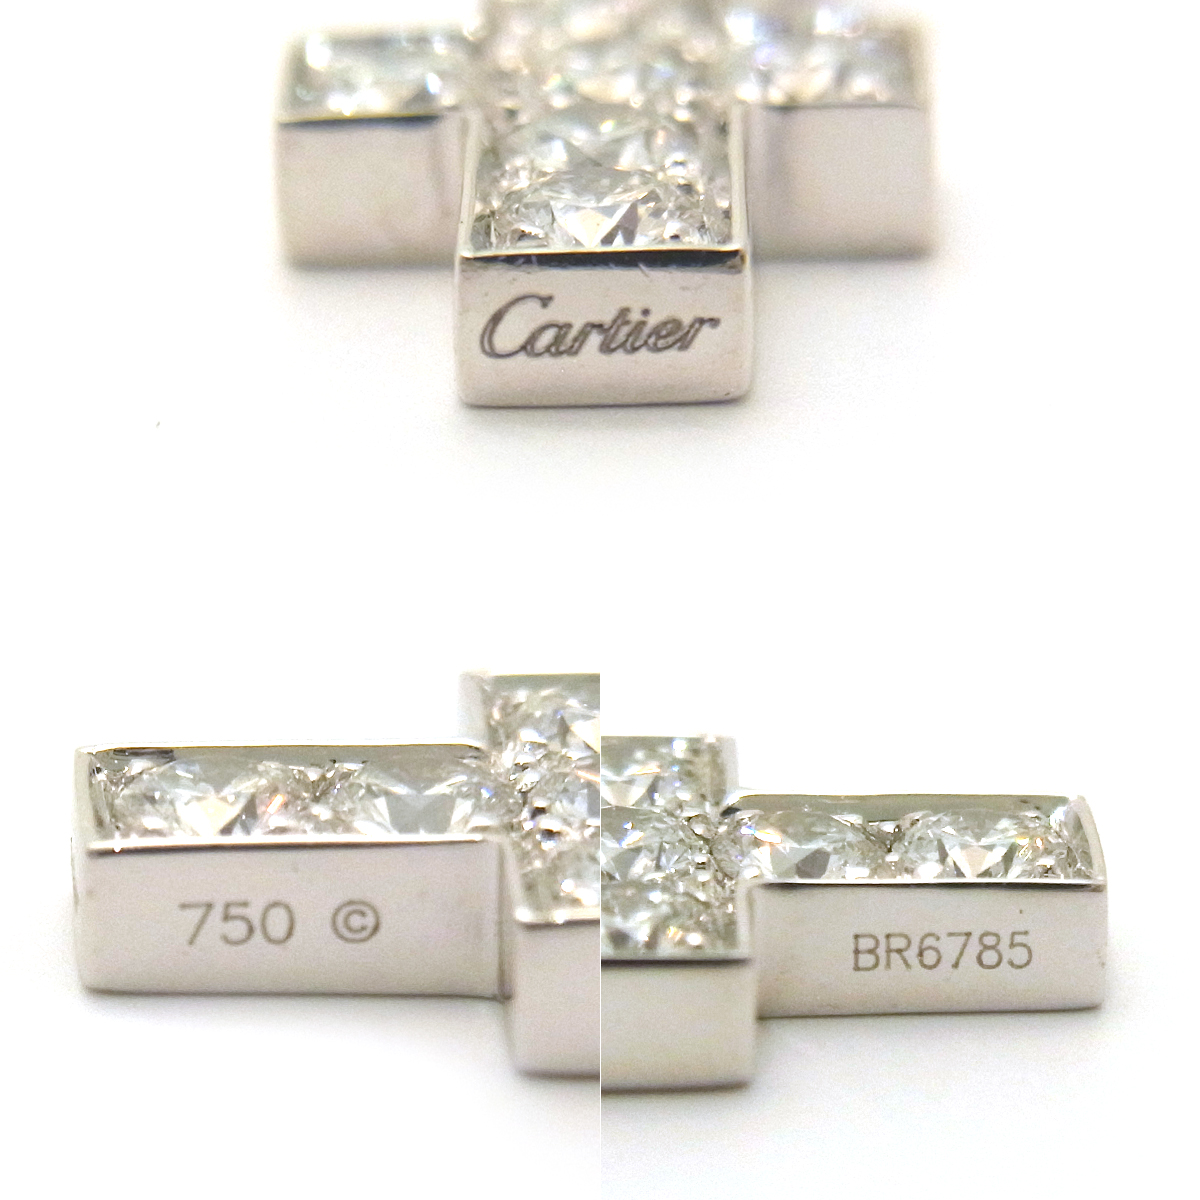 カルティエ(Cartier) ダイヤモンドクロスチャーム BR6785  シルバーカラー